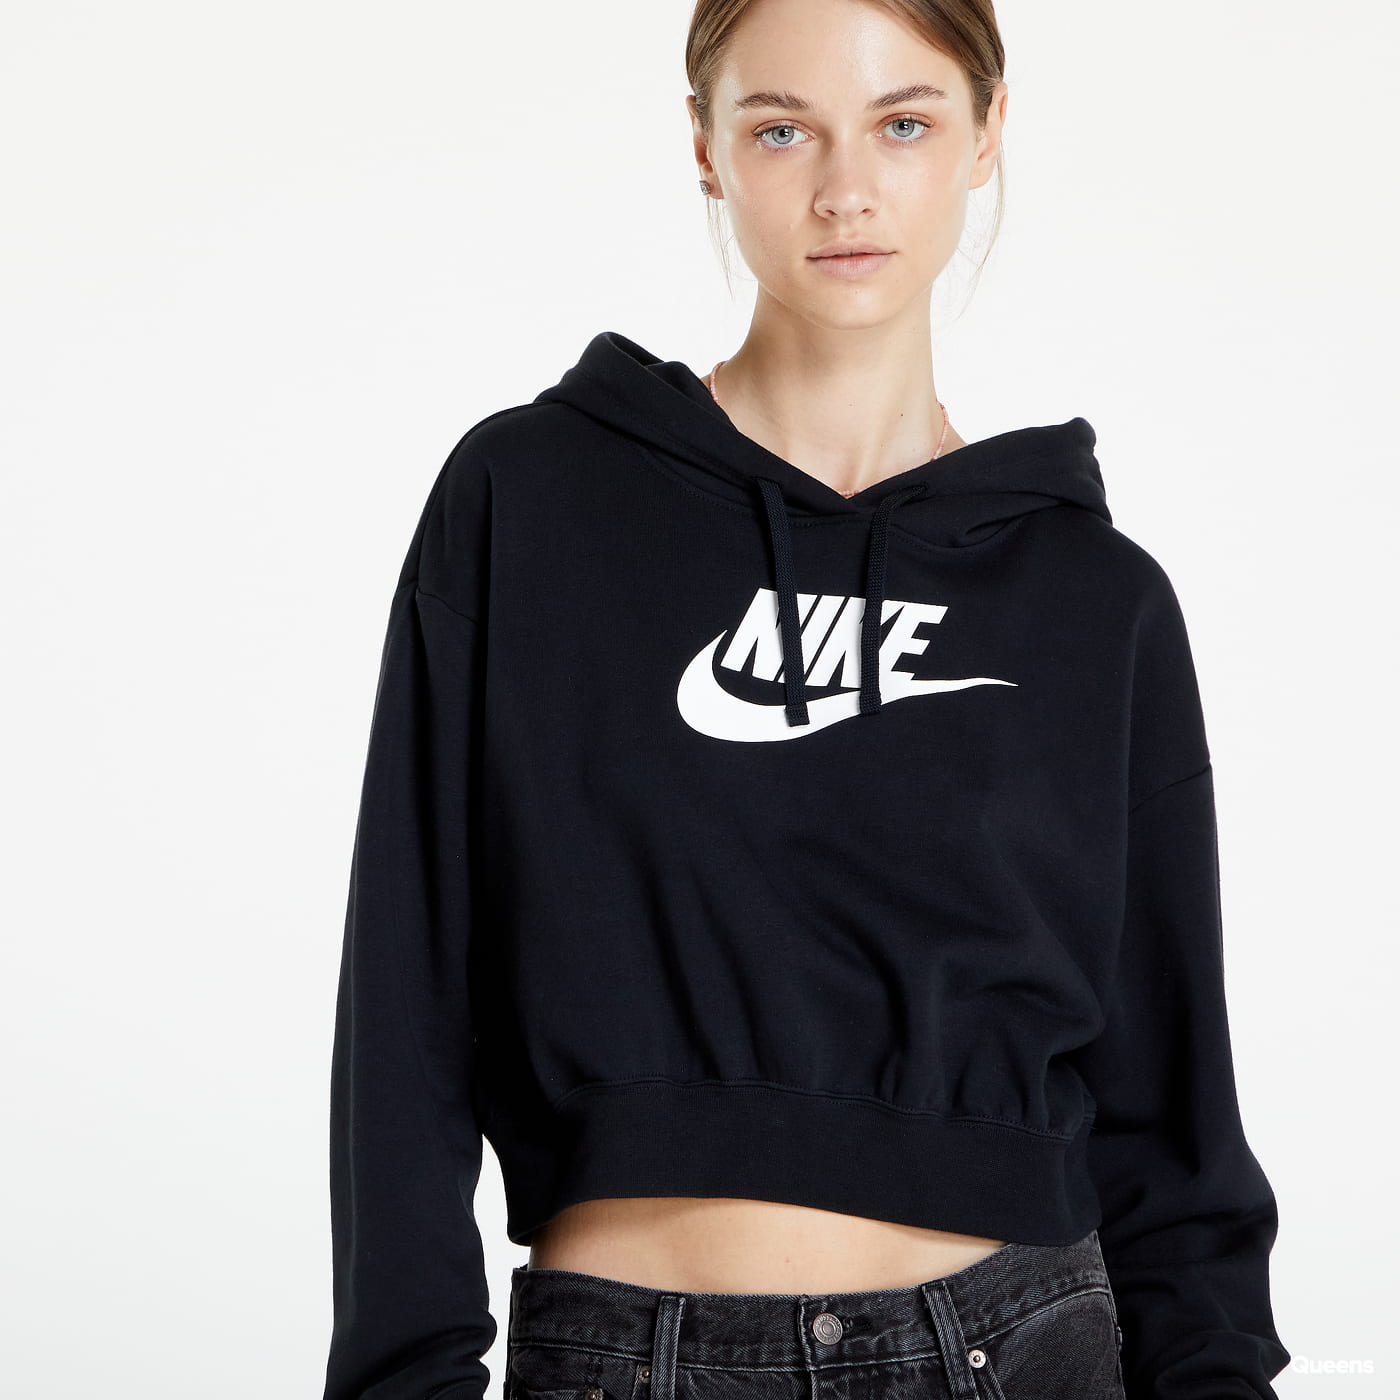 Nike Sportswear Women's Oversized Fleece Pullover Hoodie.